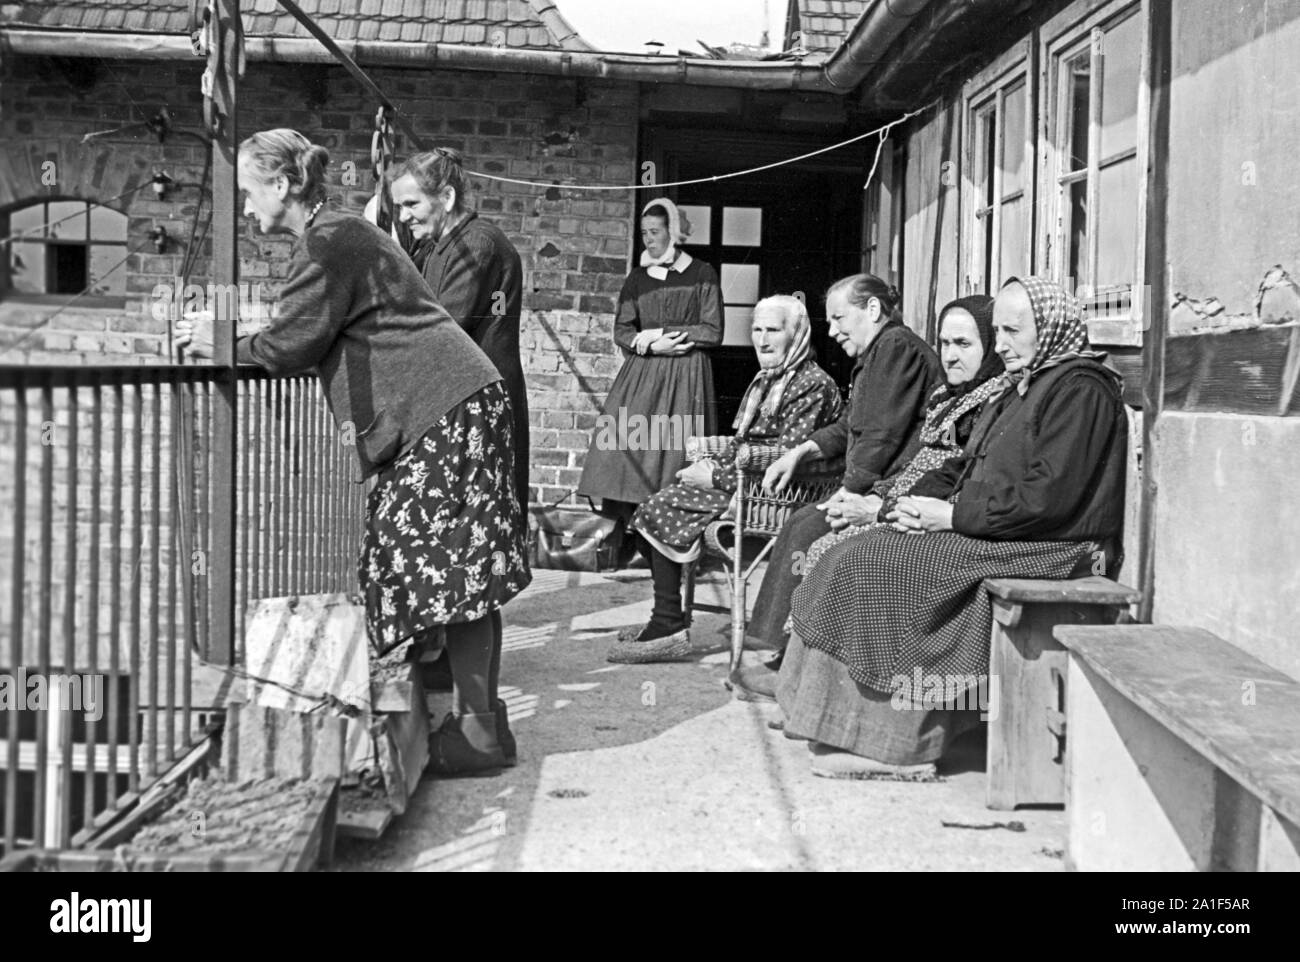 Ältere Frauen stehen auf einem eines Balkon Altersheims en Frankfurt an der Oder, Alemania 1948. Las mujeres mayores en un balcón de un hogar de ancianos en Frankfurt/Oder, Alemania 1948. Foto de stock